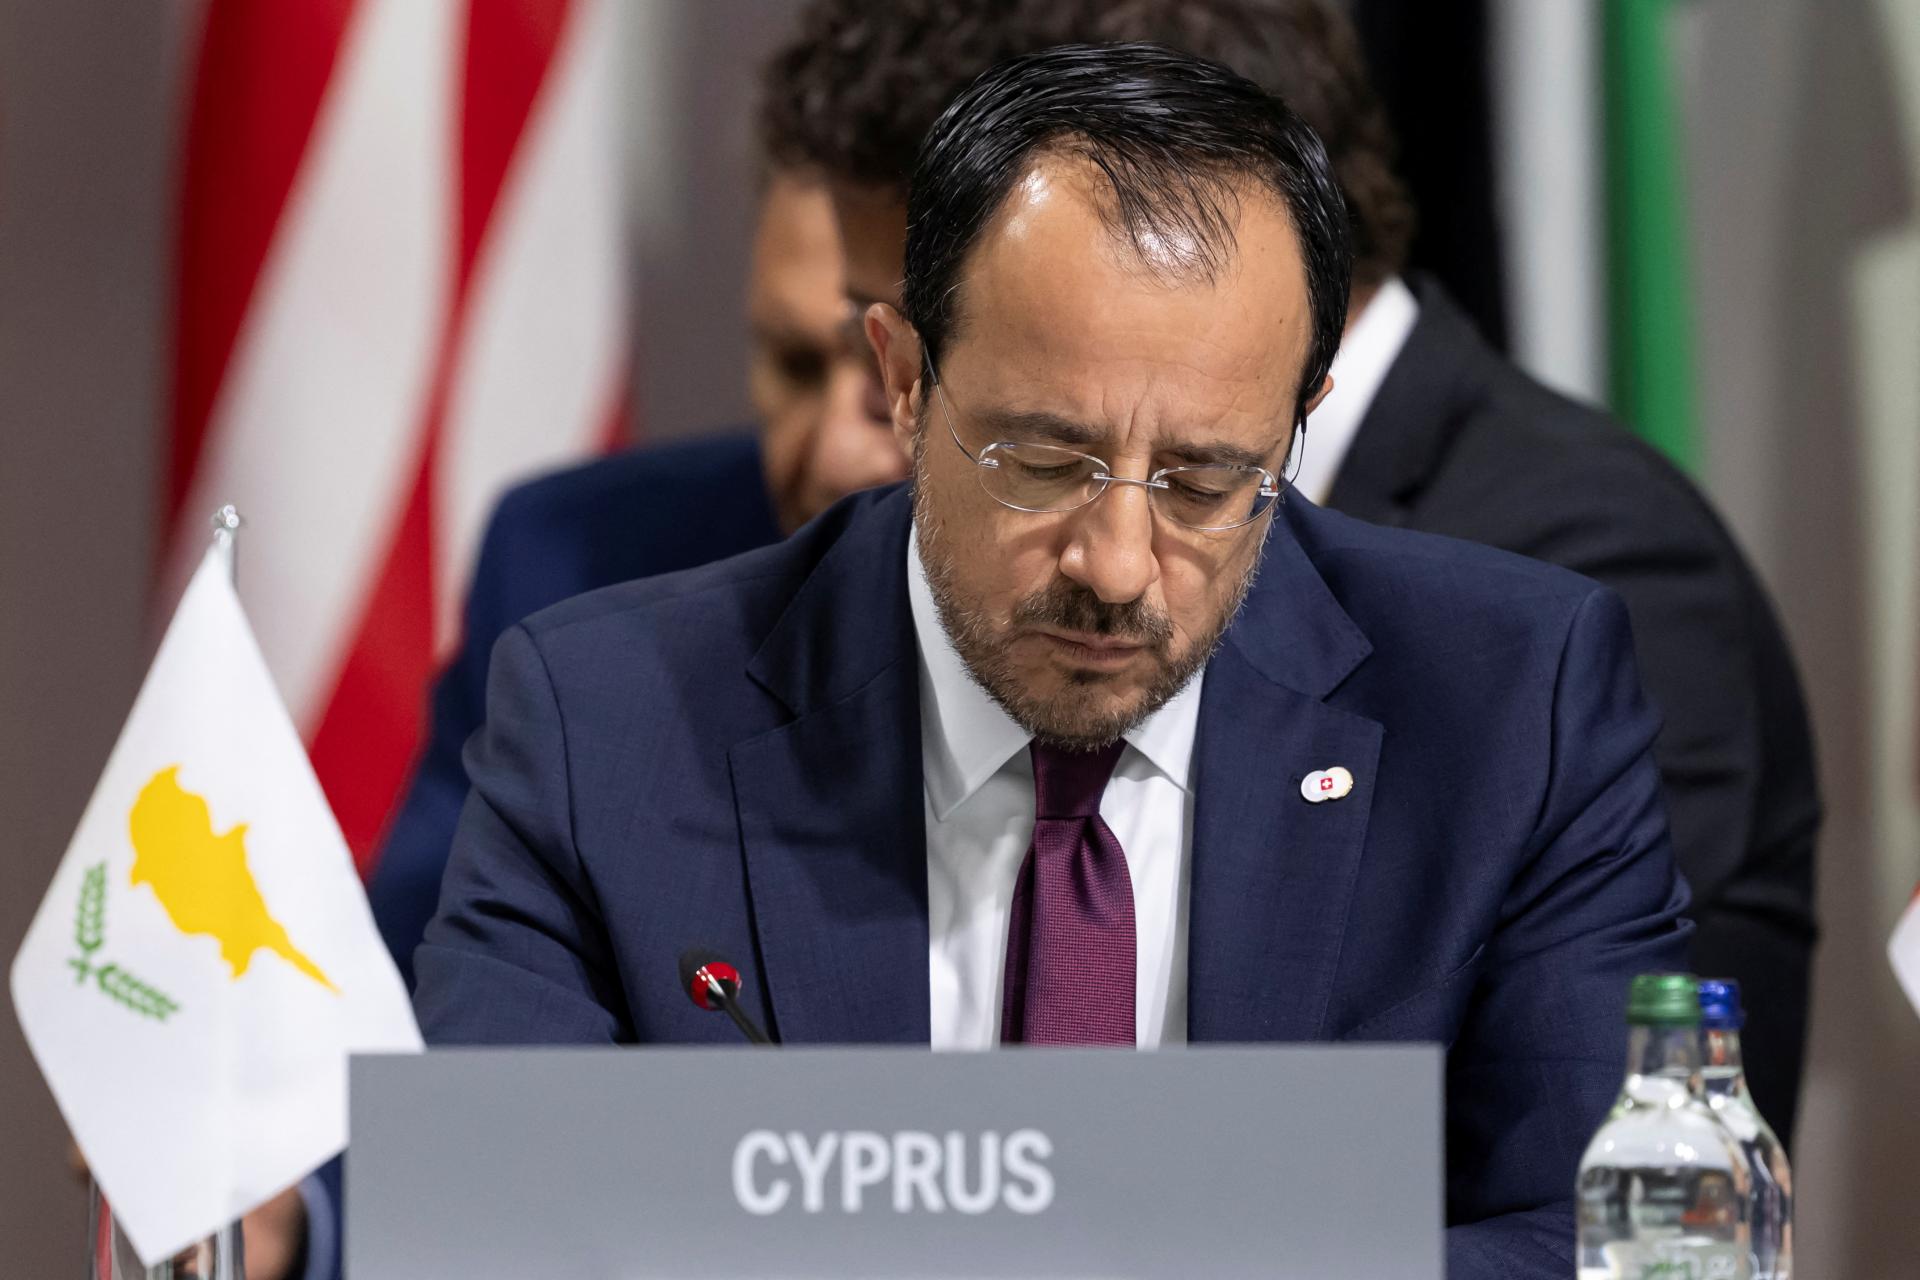 Cyprus odmieta hrozby vodcu Hizballáhu, avizuje diplomatické kroky